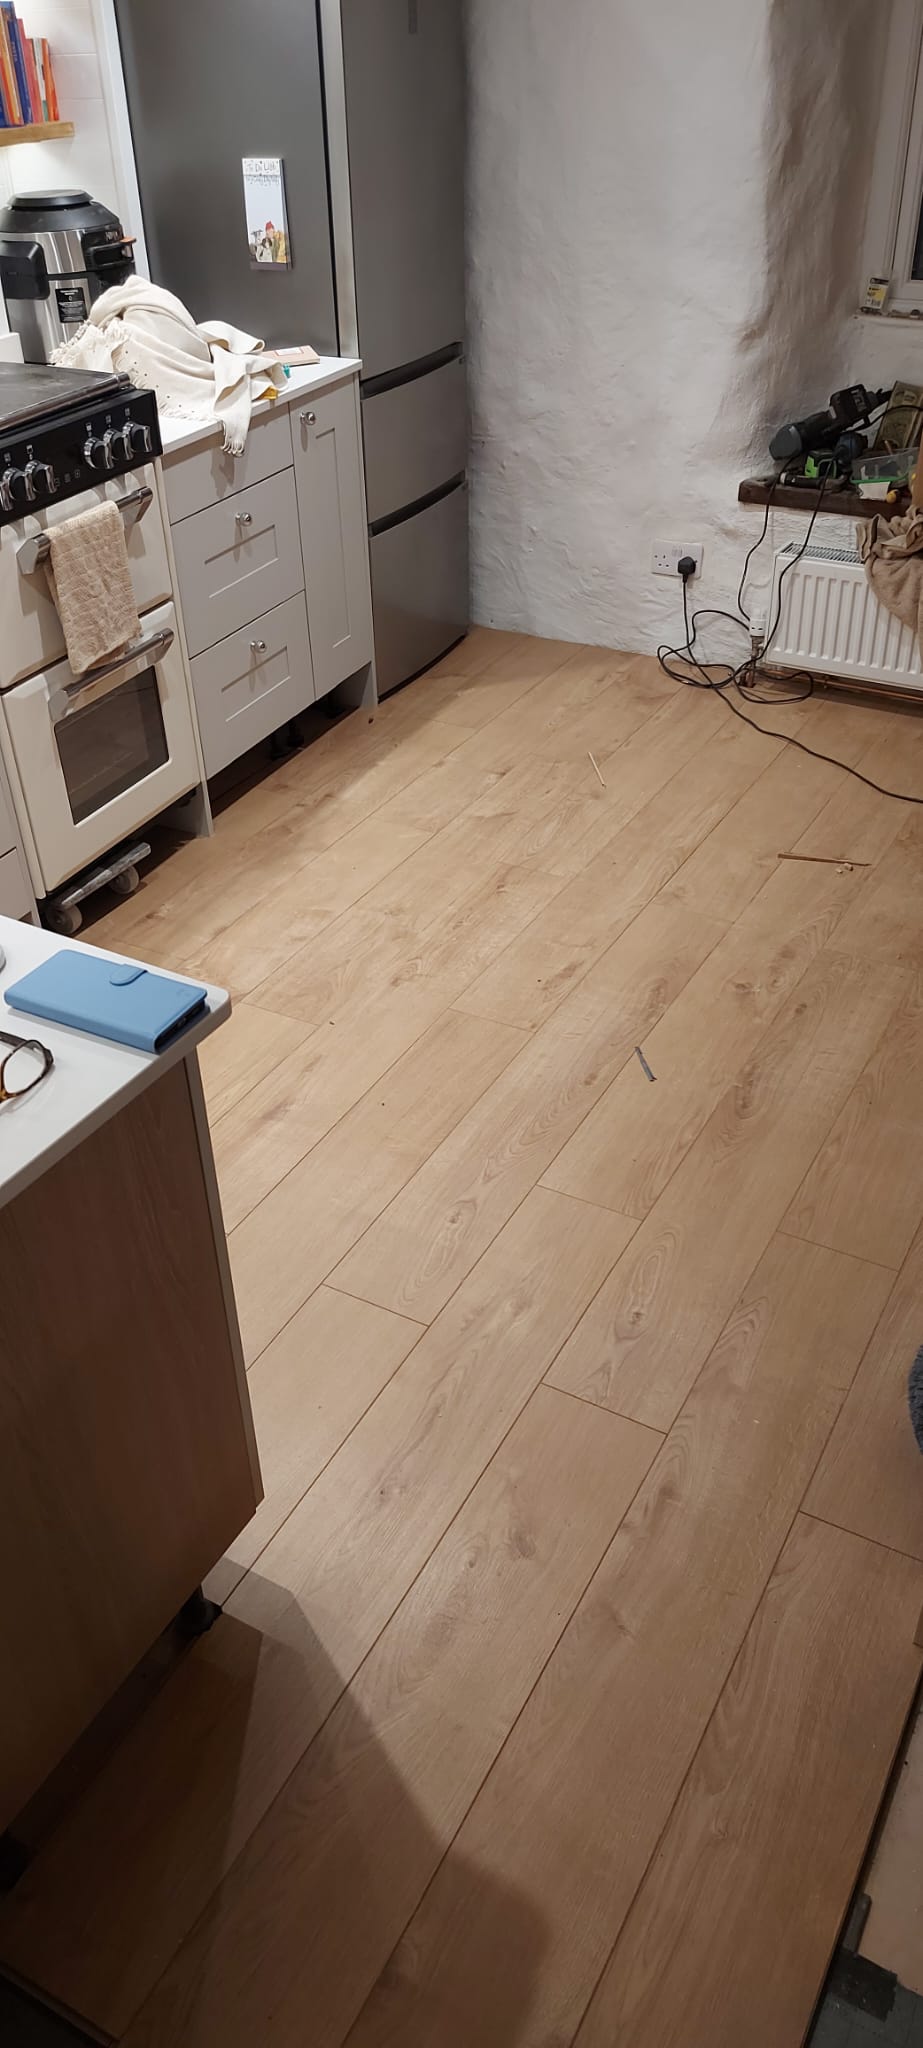 New Kitchen Floor Installed